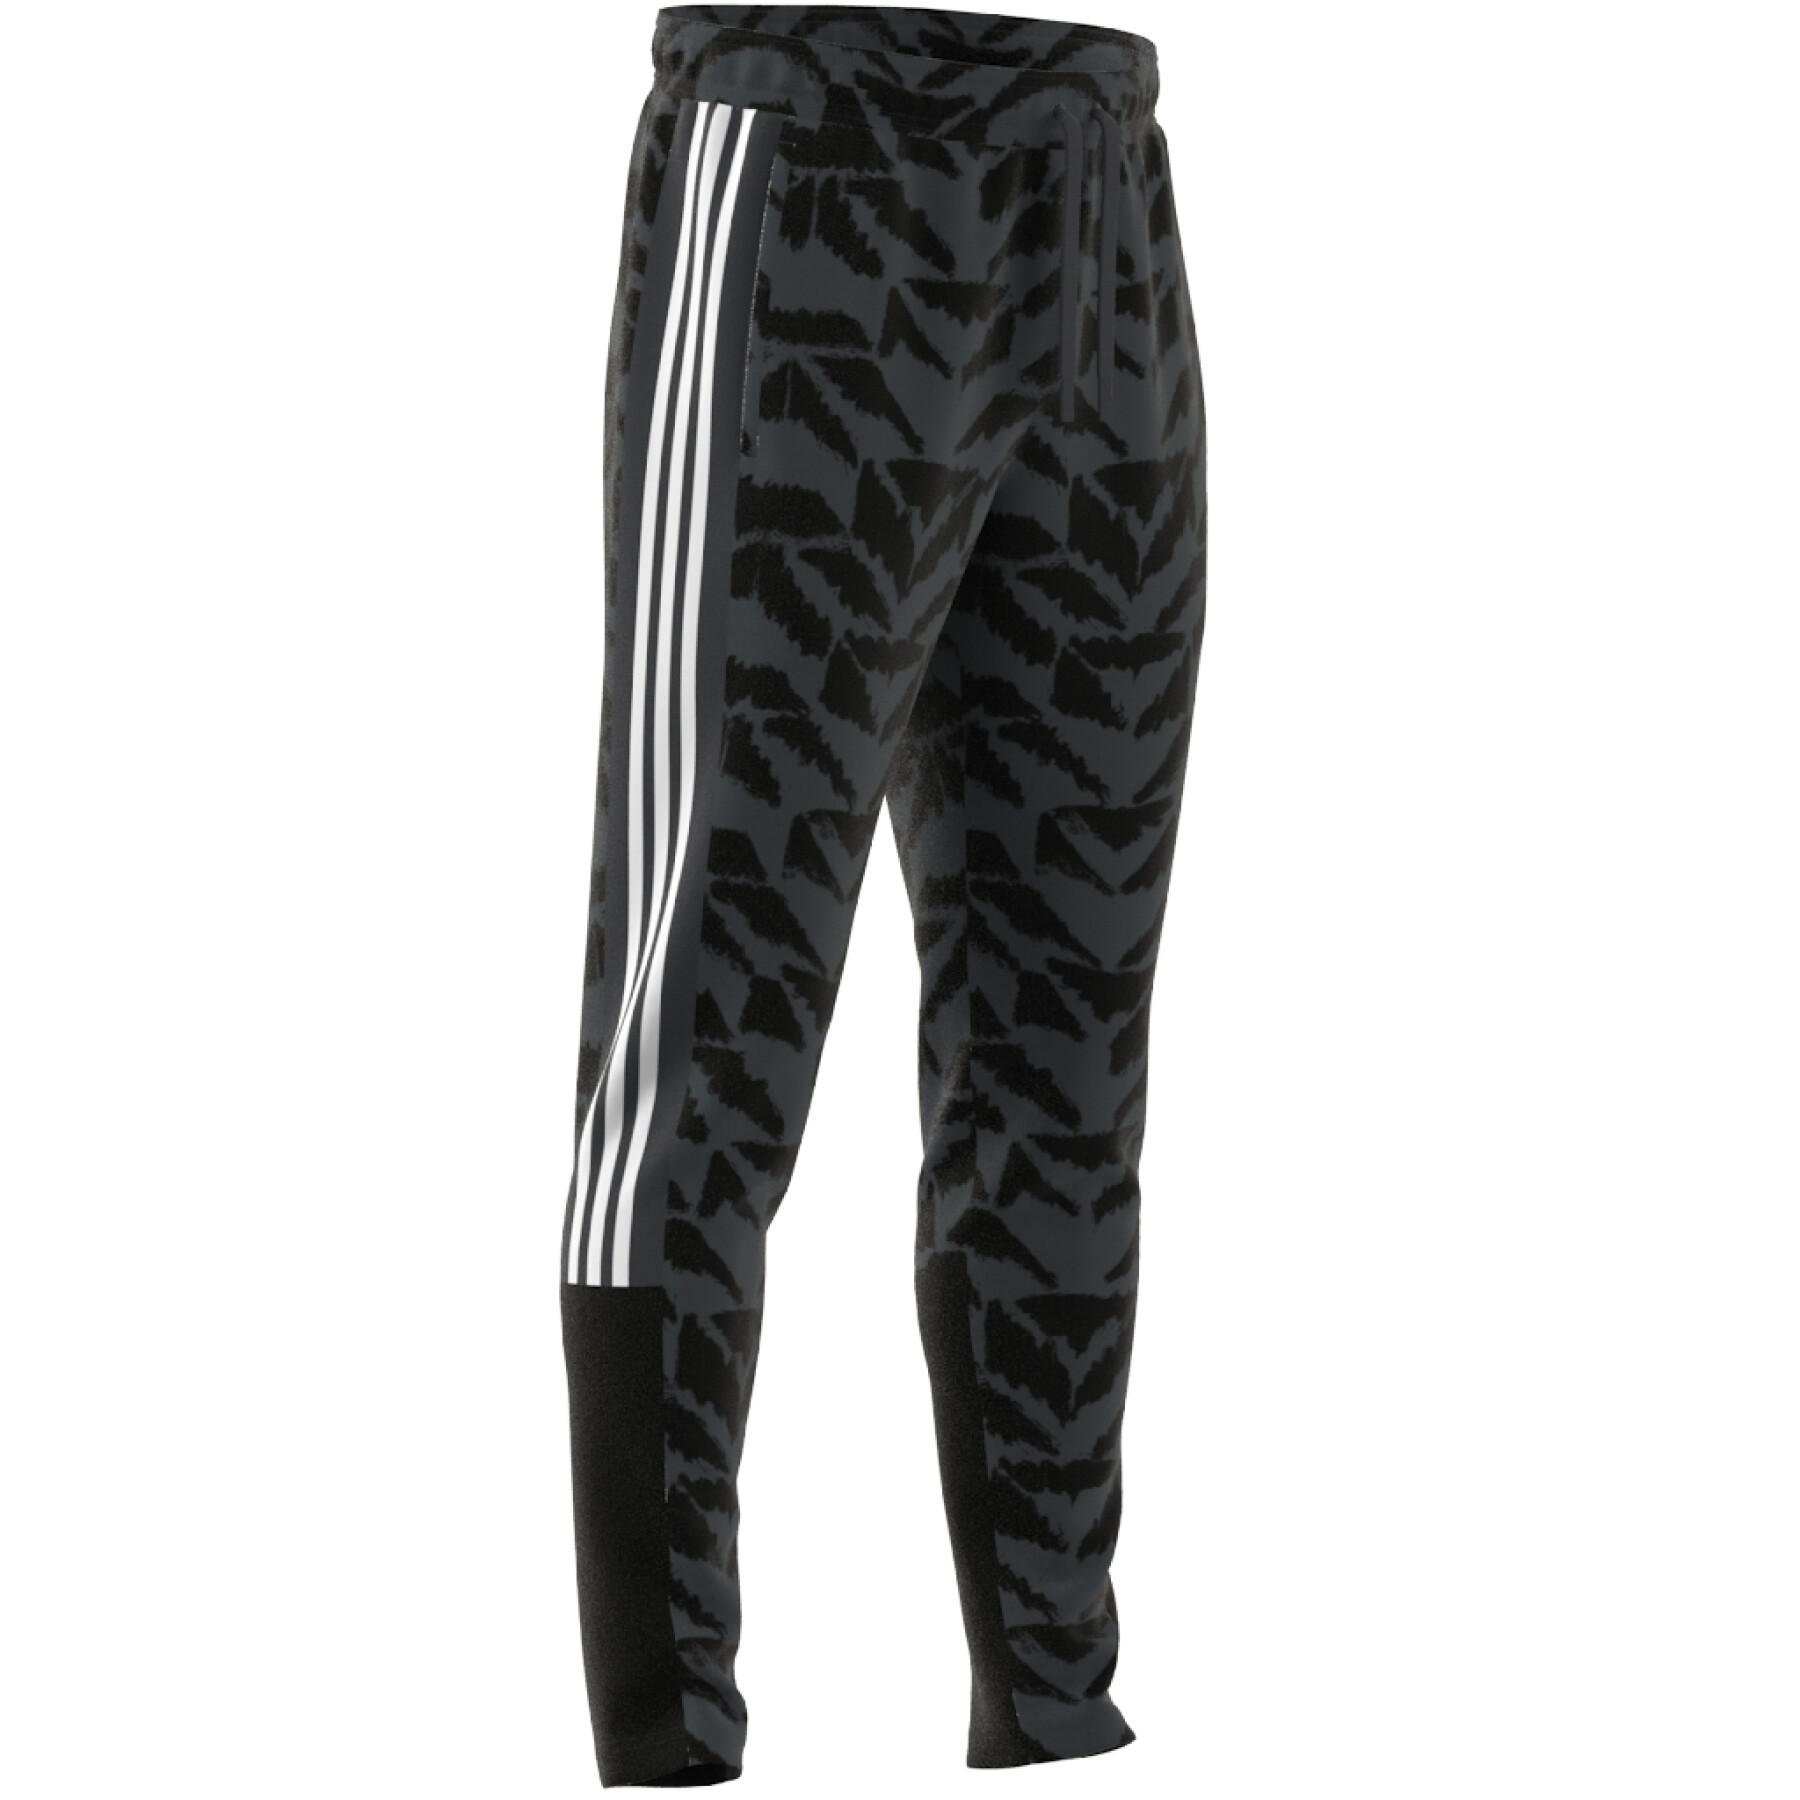 Pantalón de jogging adidas Tiro Suit-Up Lifestyle